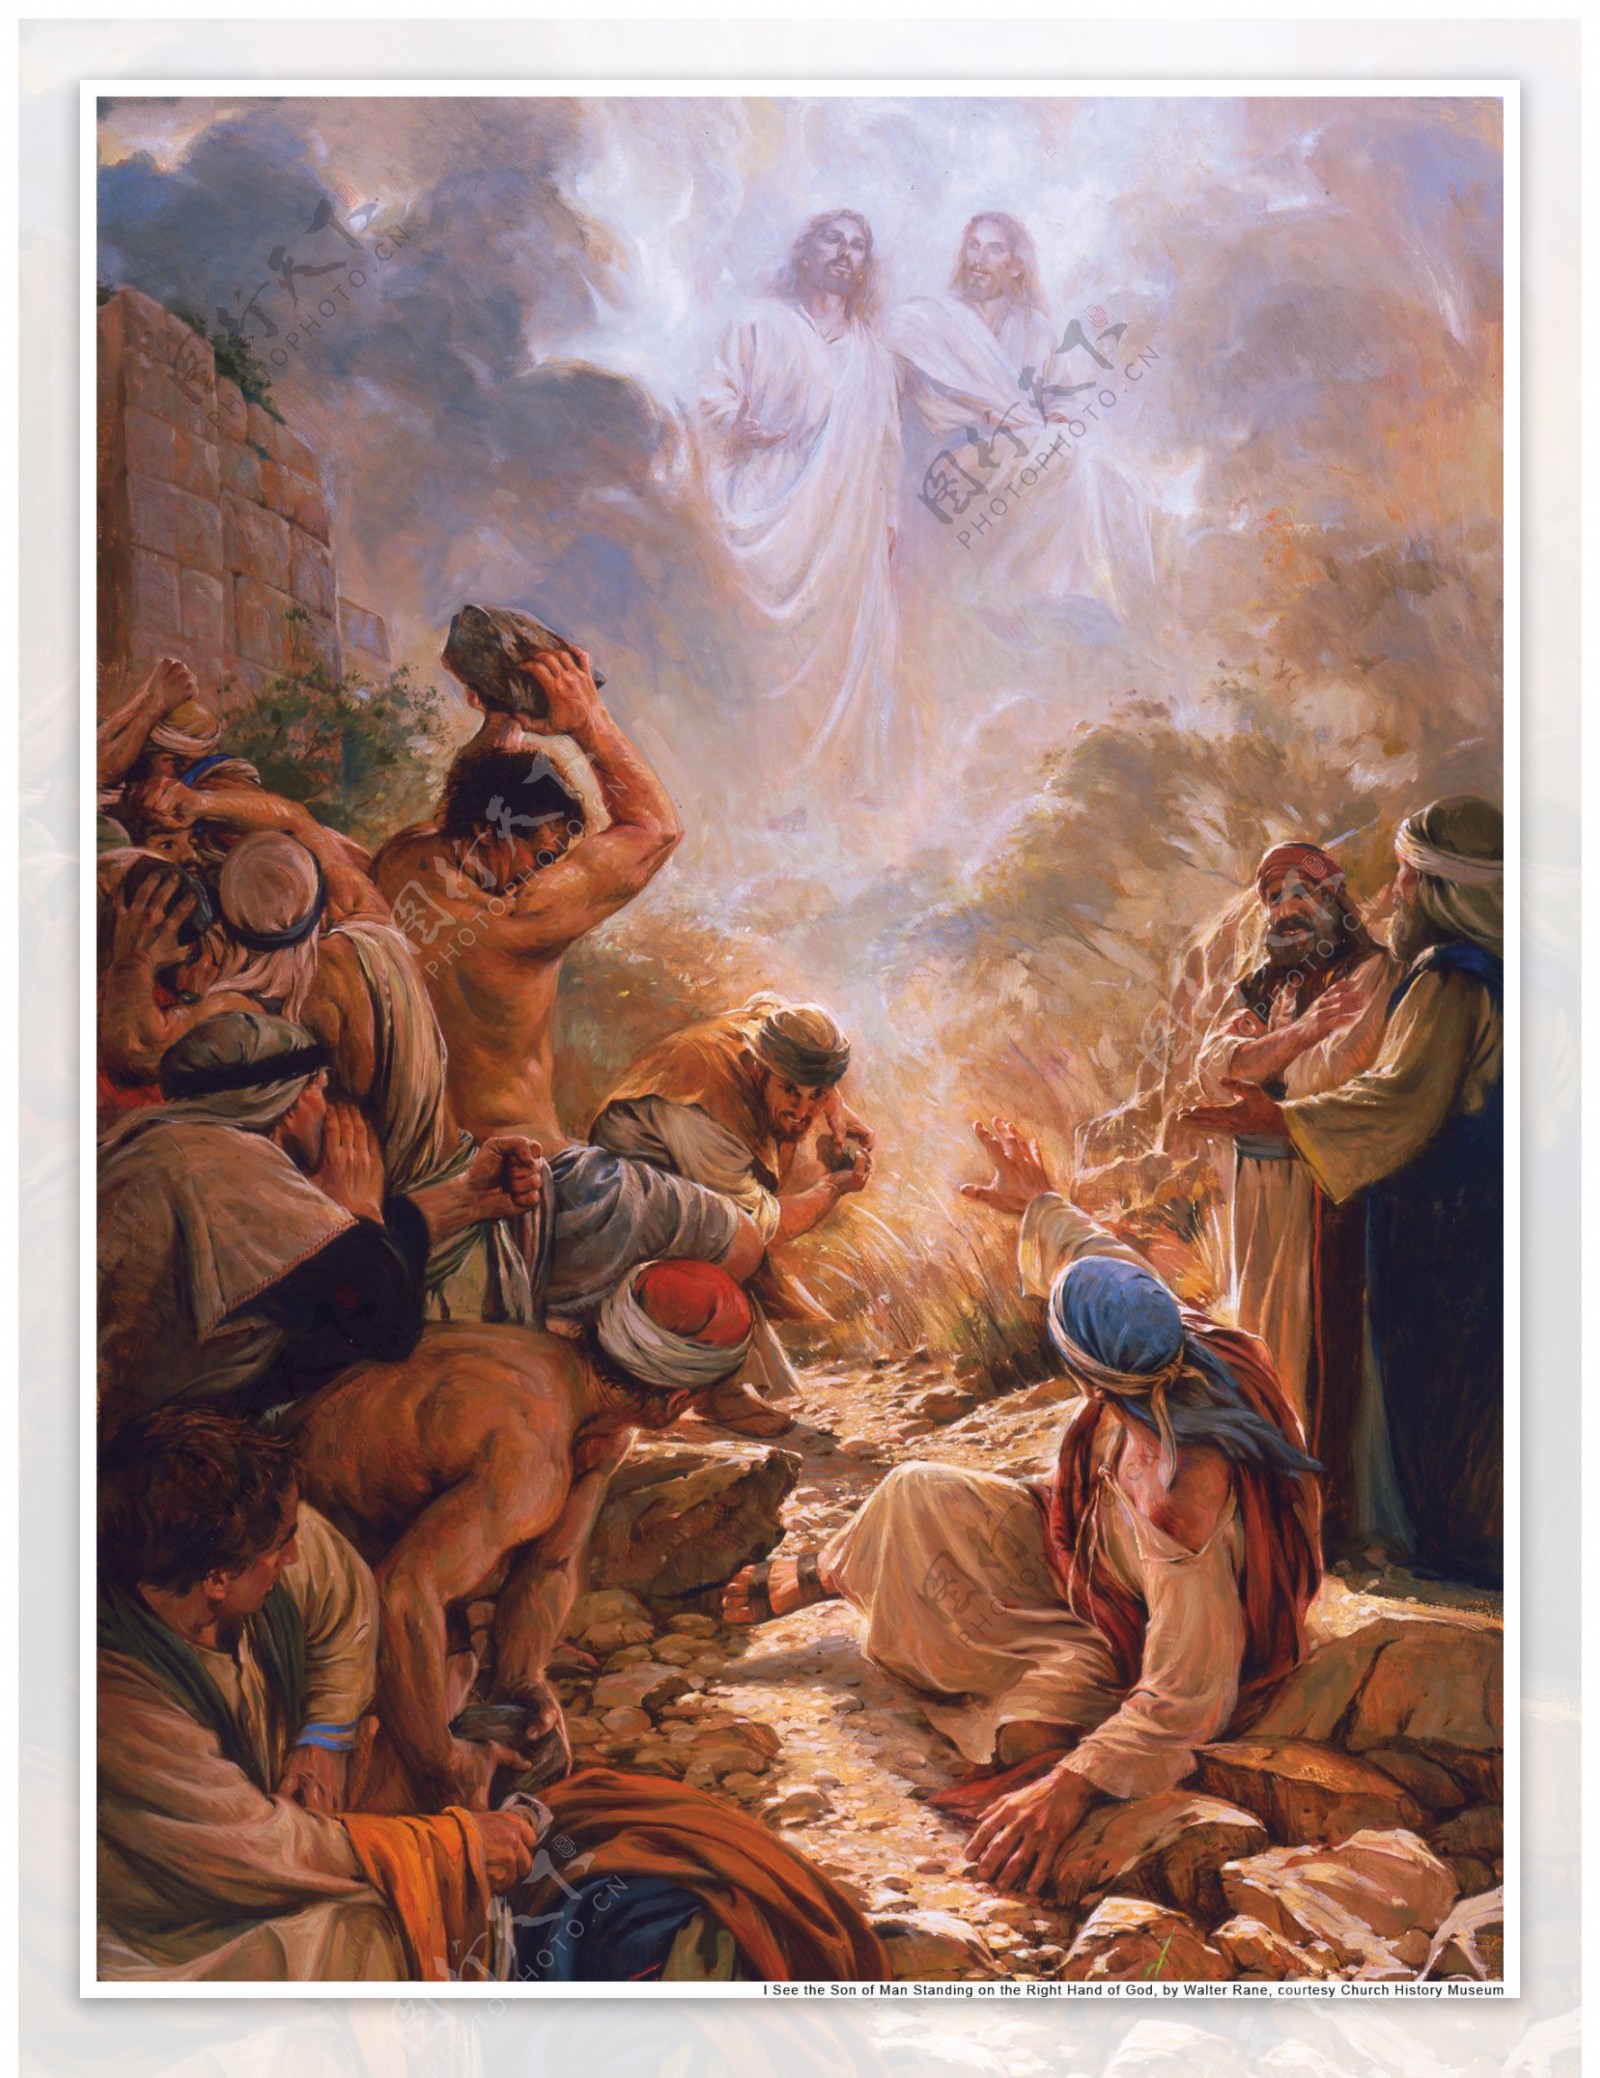 耶稣基督与天使的死亡 古铜像 库存照片. 图片 包括有 复活, 复活节, 想法, 交叉, 拱道, 死亡 - 161376088